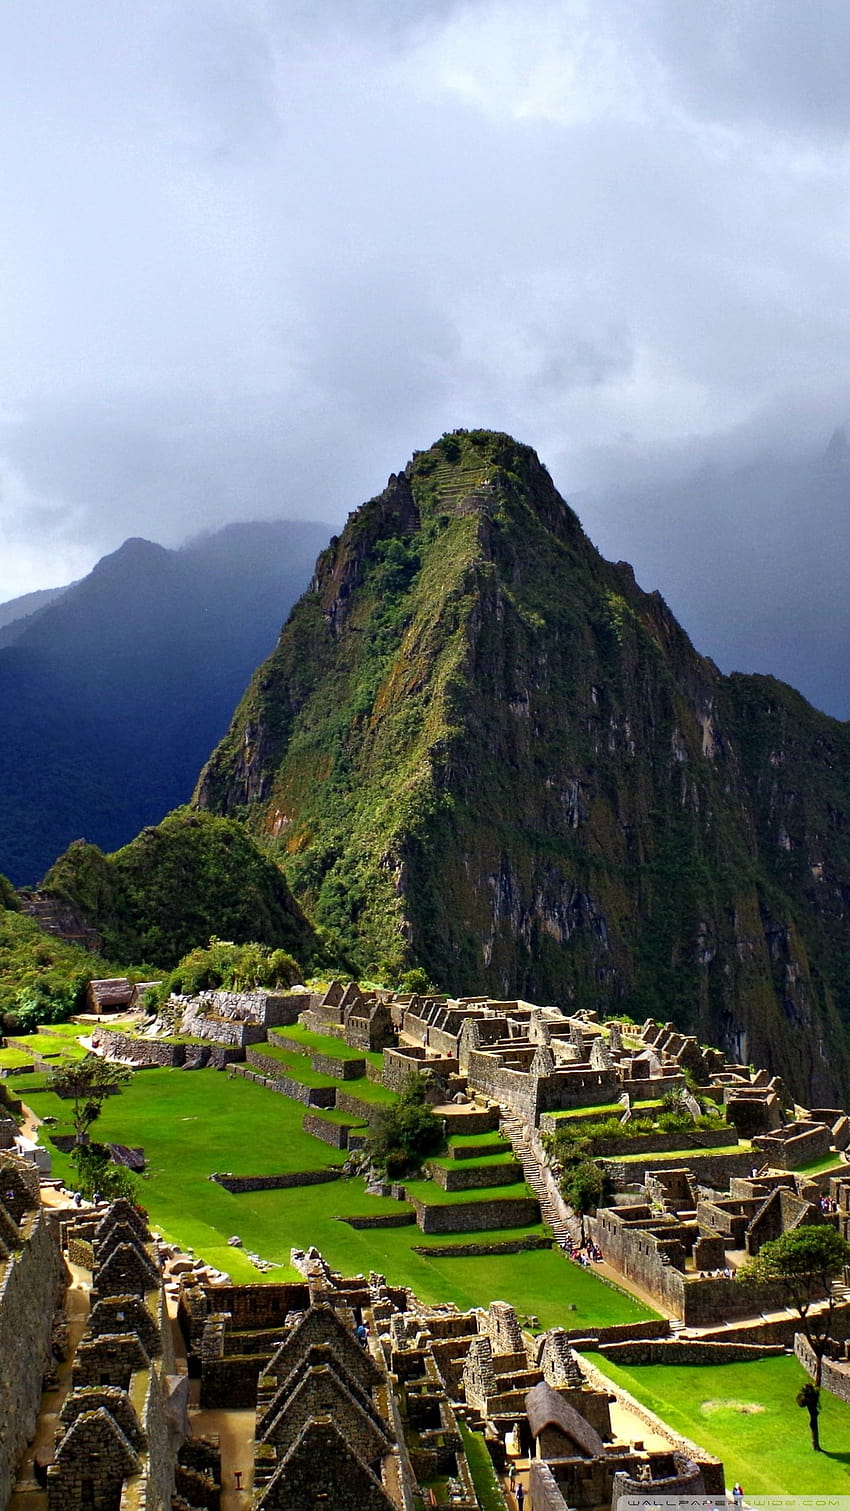 Machu Picchu - kì quan của nền văn minh Inca, nơi bạn có thể ngắm nhìn toàn cảnh của thành phố cổ này và tìm hiểu về những bí mật động trời. Hãy ghi lại khoảnh khắc tuyệt vời của bạn khi khám phá hình ảnh liên quan đến Machu Picchu.